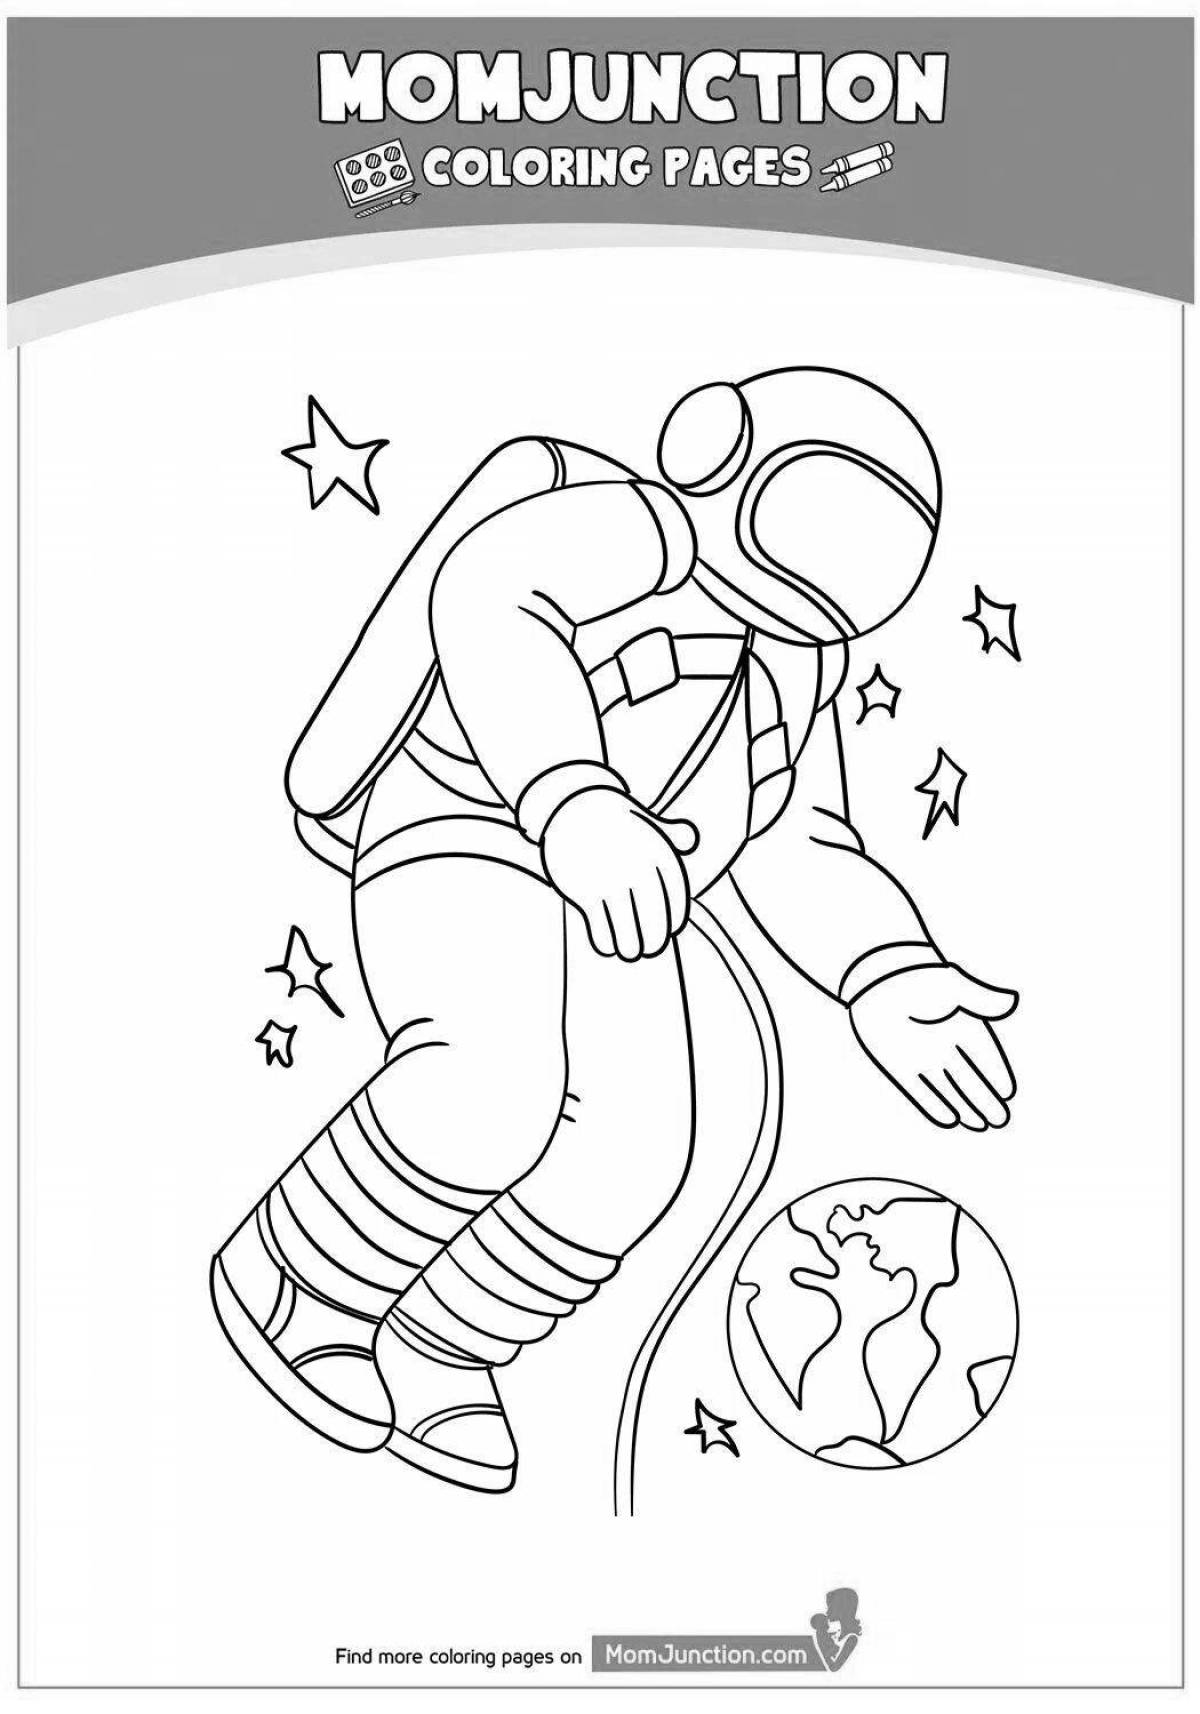 Распечатать космонавта для поделки. Космонавт раскраска для детей. Космонавт рисунок раскраска. Космонавт раскраска для малышей. Космос раскраска для детей.